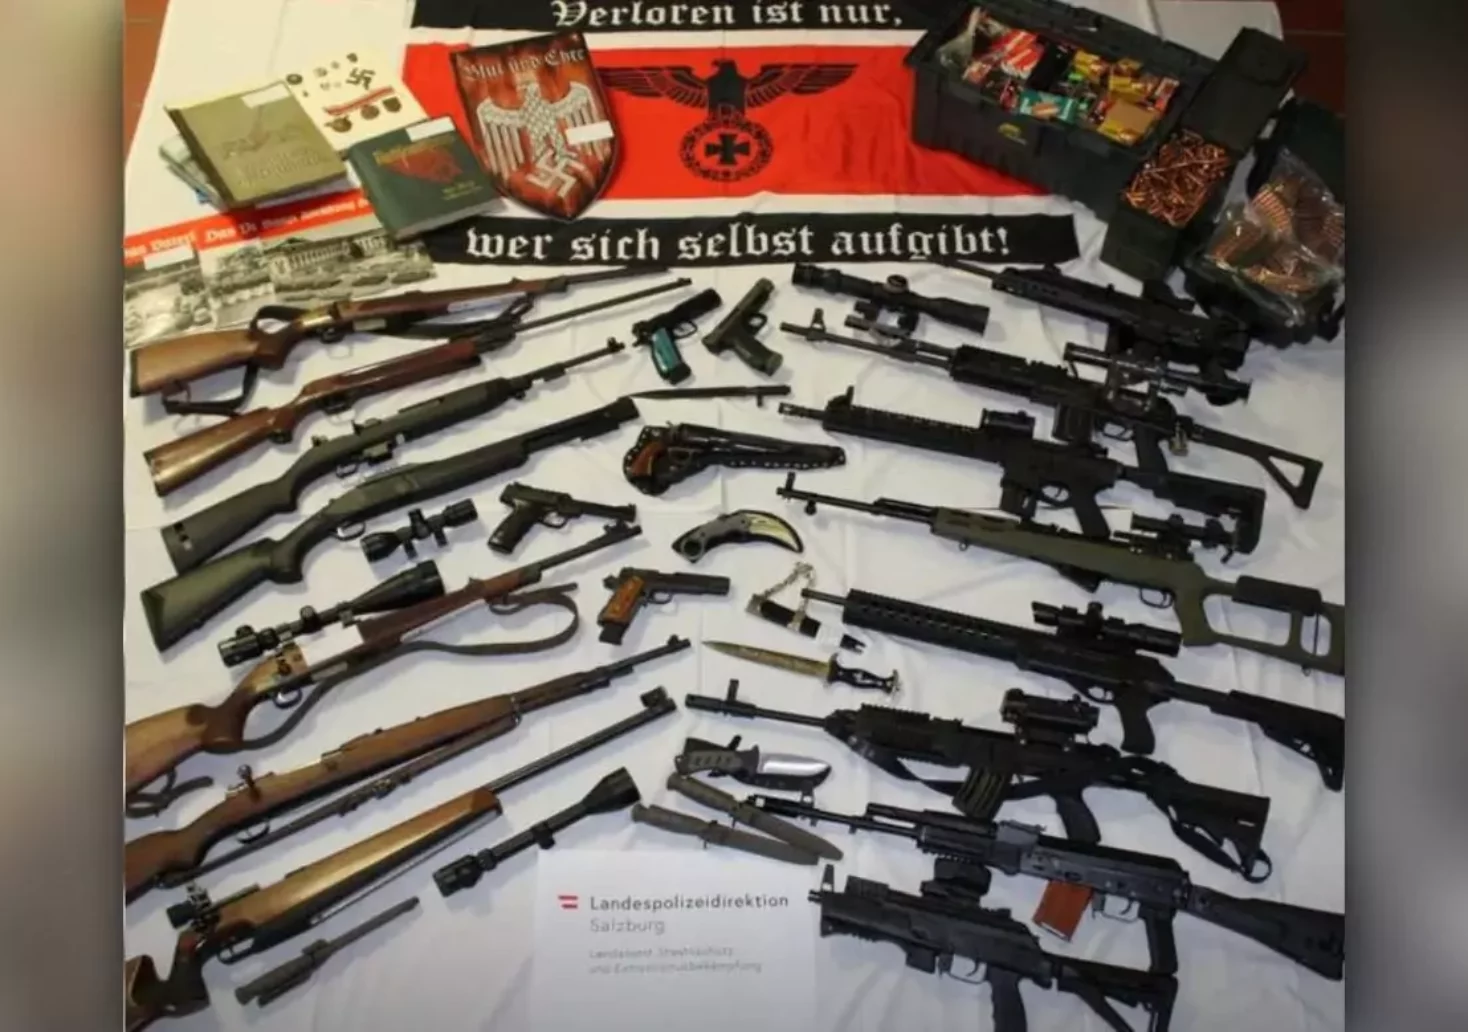 Durchsuchung in Nazi-Kreisen: Polizei stößt auf Waffenarsenal